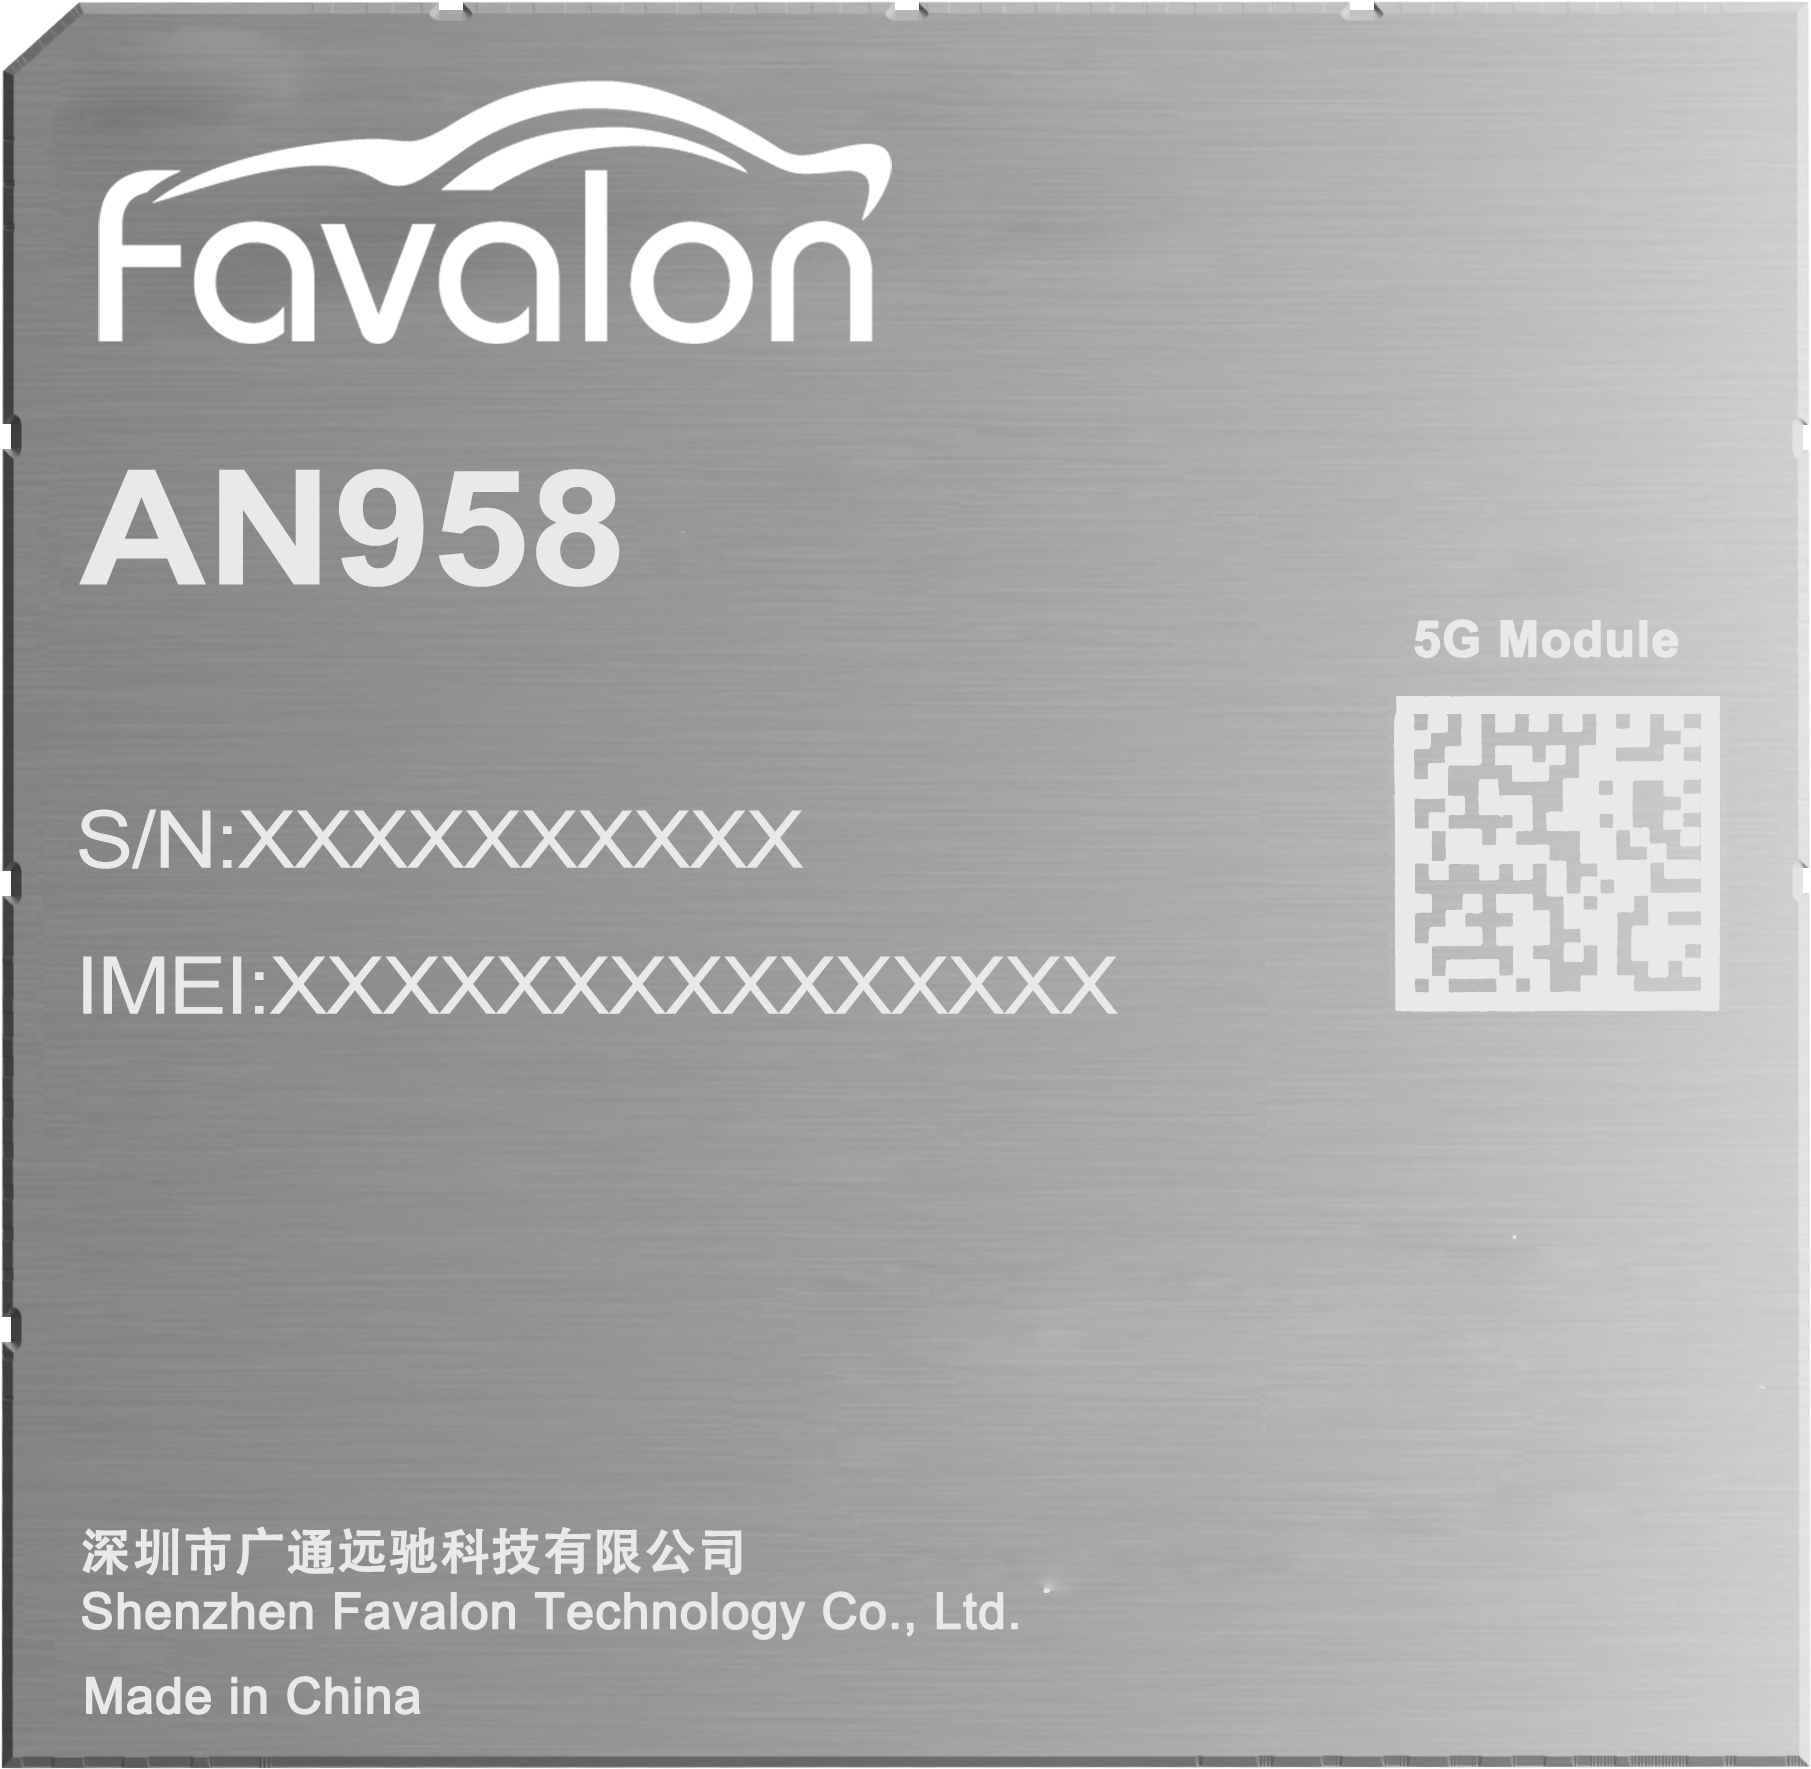 Favalon AN958